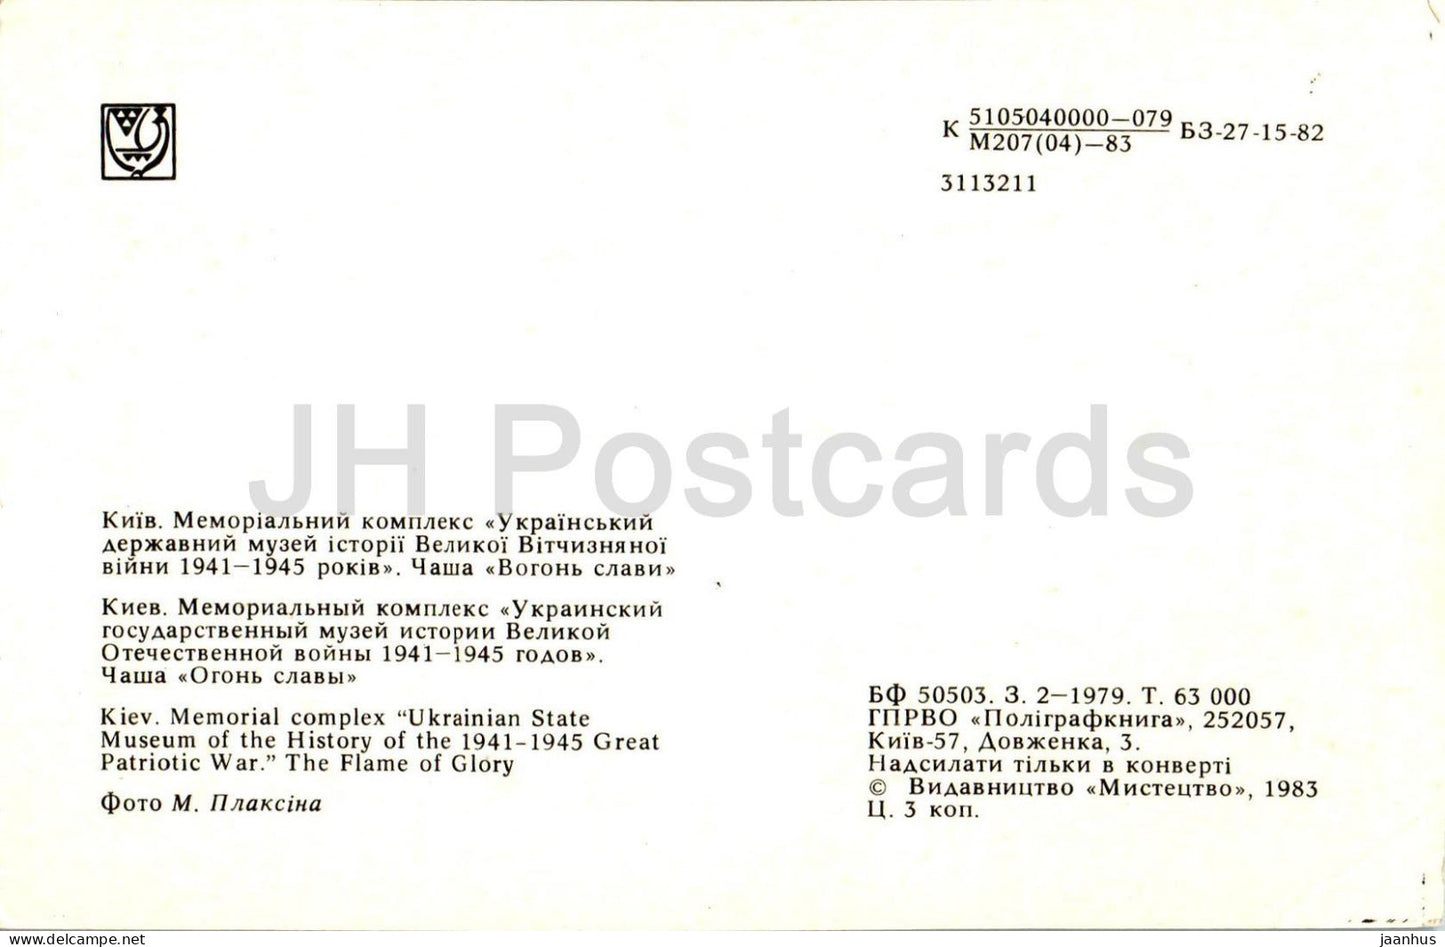 Kiew - Gedenkkomplex des Ukrainischen Staatlichen Museums der Geschichte des Zweiten Weltkriegs - 1983 - Ukraine UdSSR - unbenutzt 